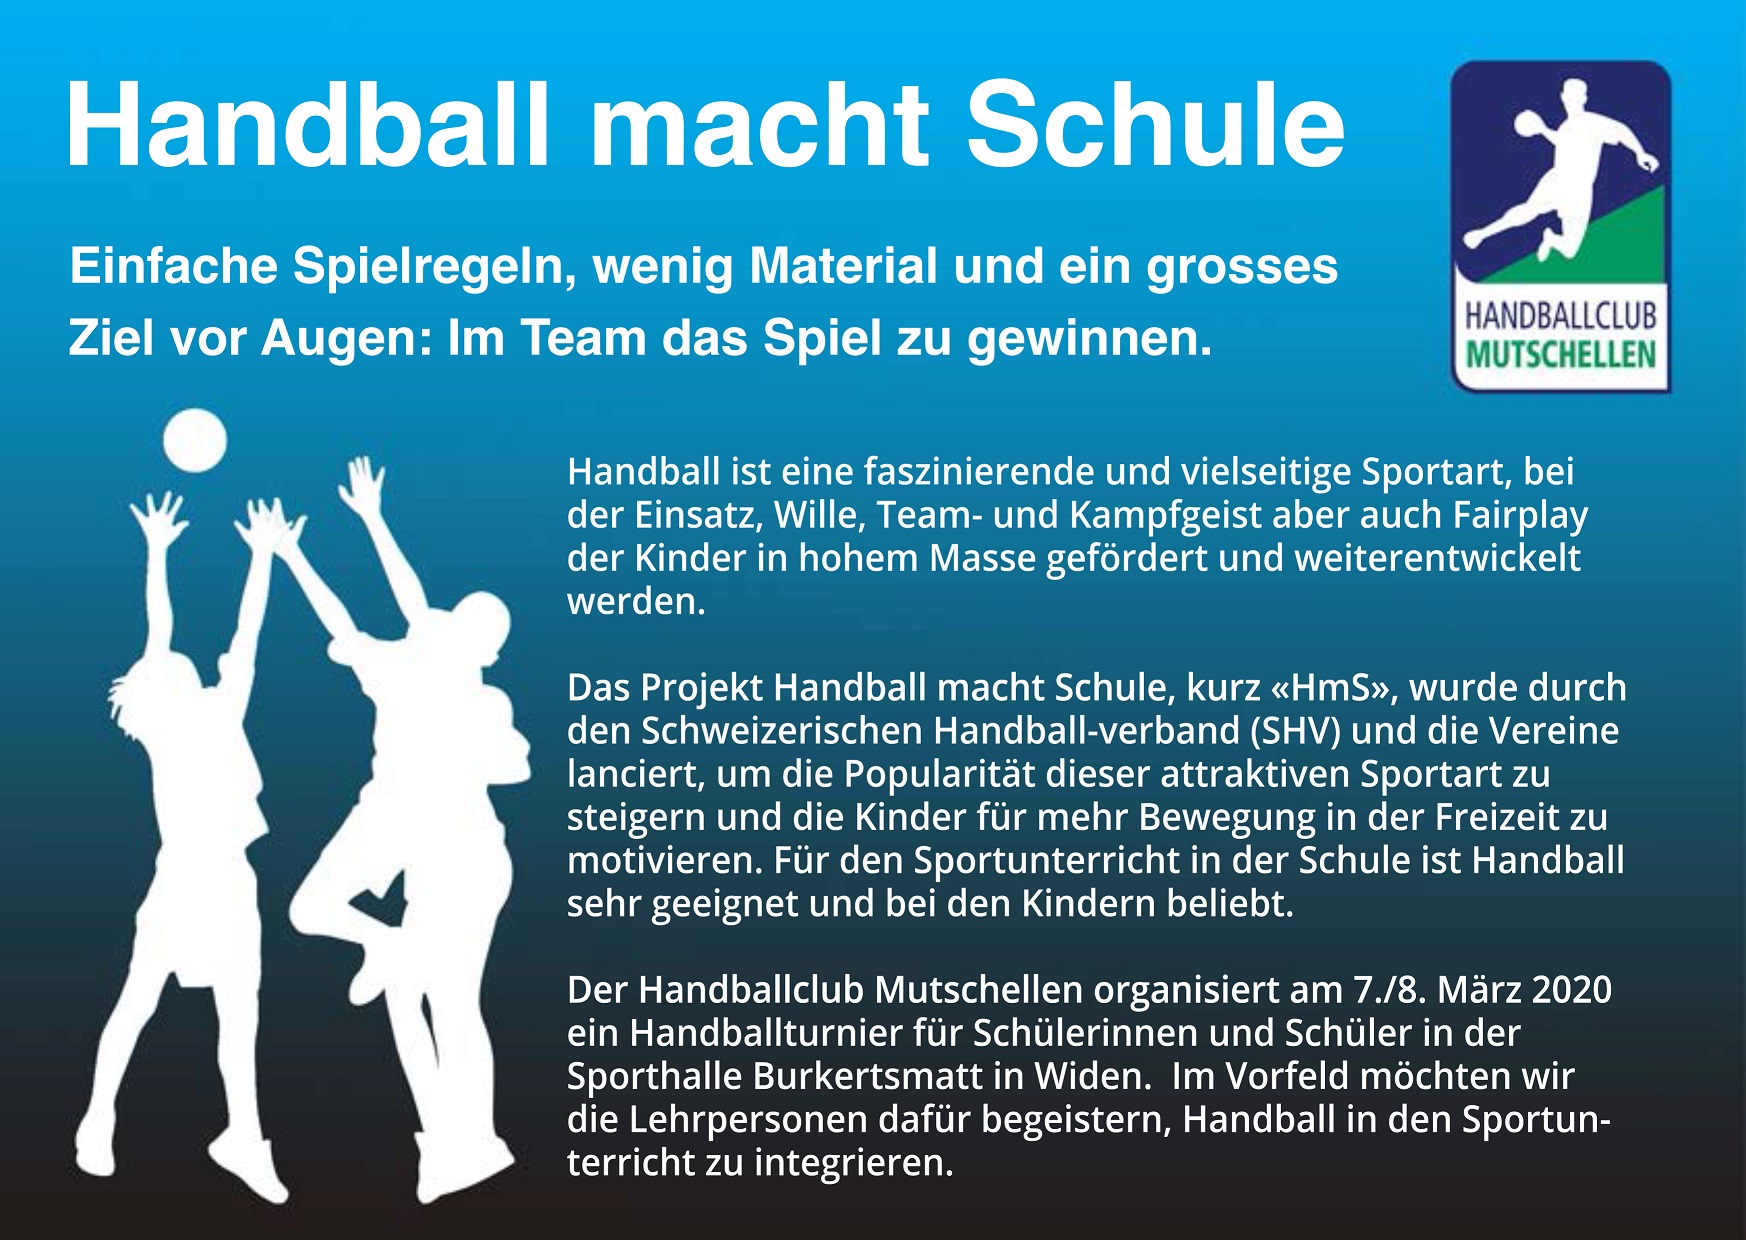 Handball macht Schule HC Mutschellen